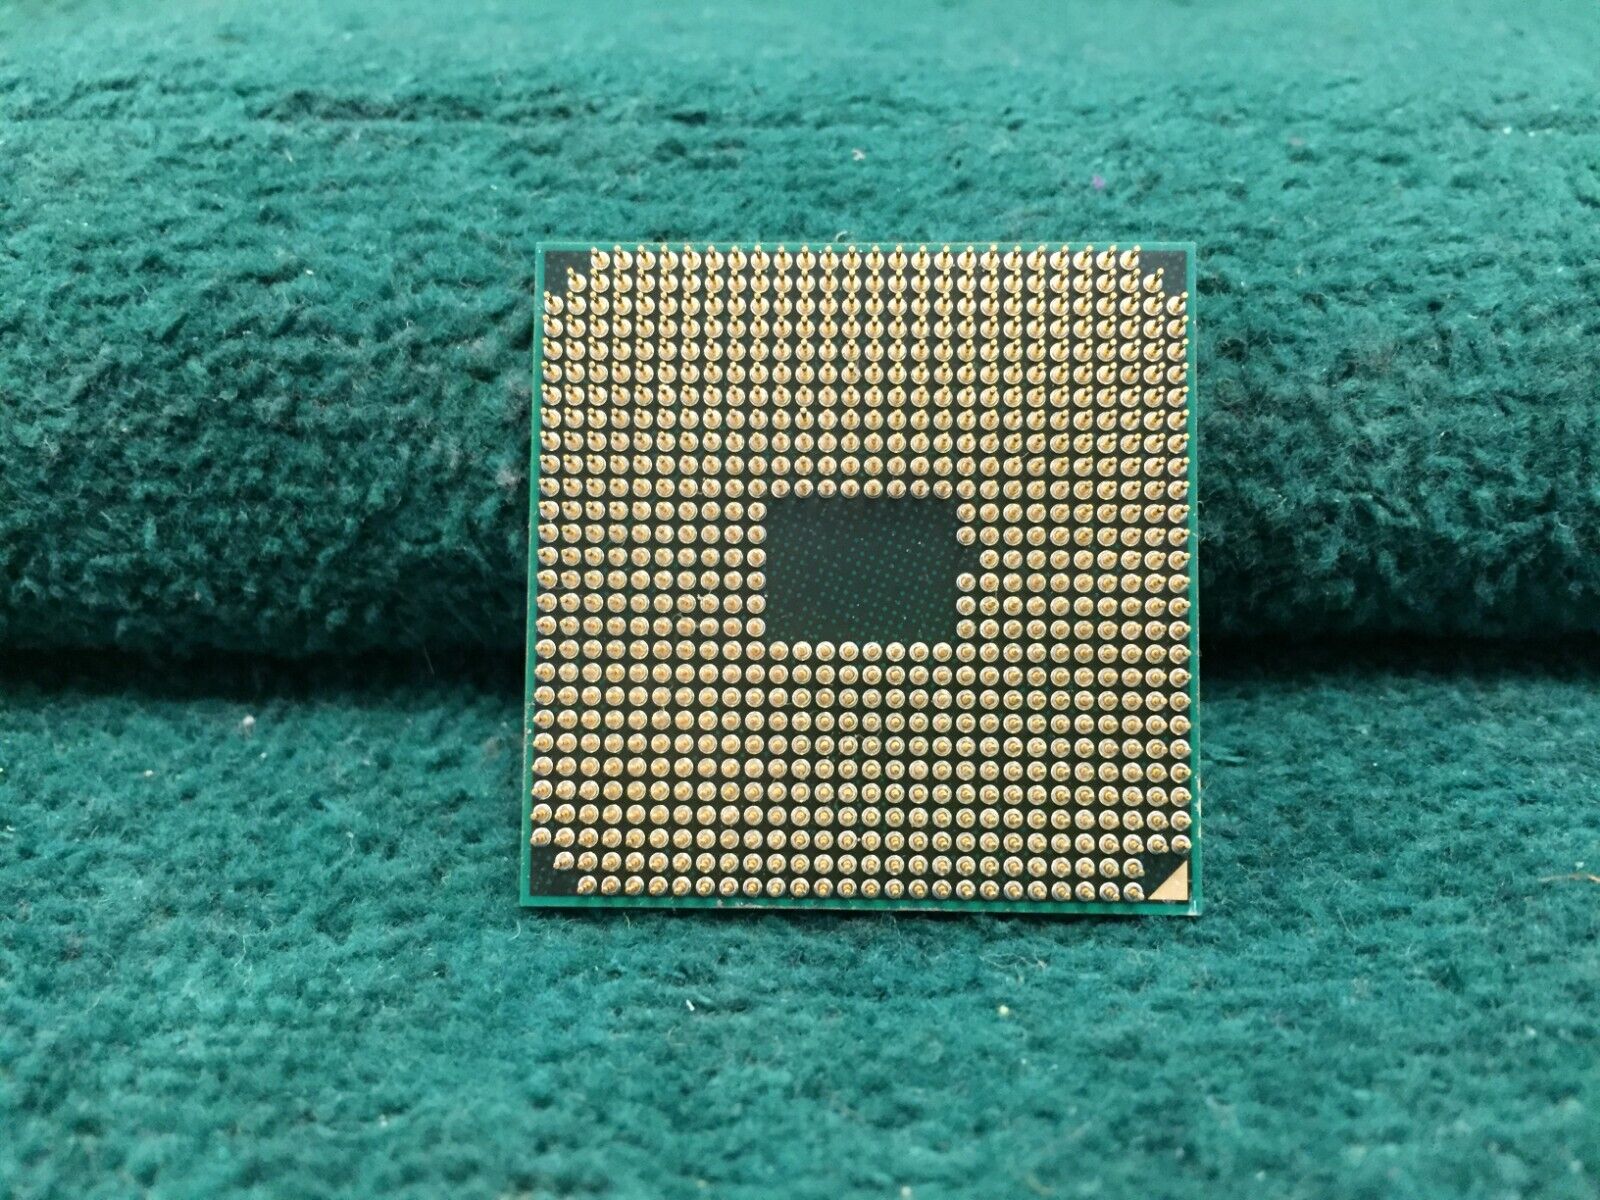 AM4600DEC44HJ AMD A10-4600M CPU 4 Core 2.3GHz 4M Socket FS1 Mobile Processor